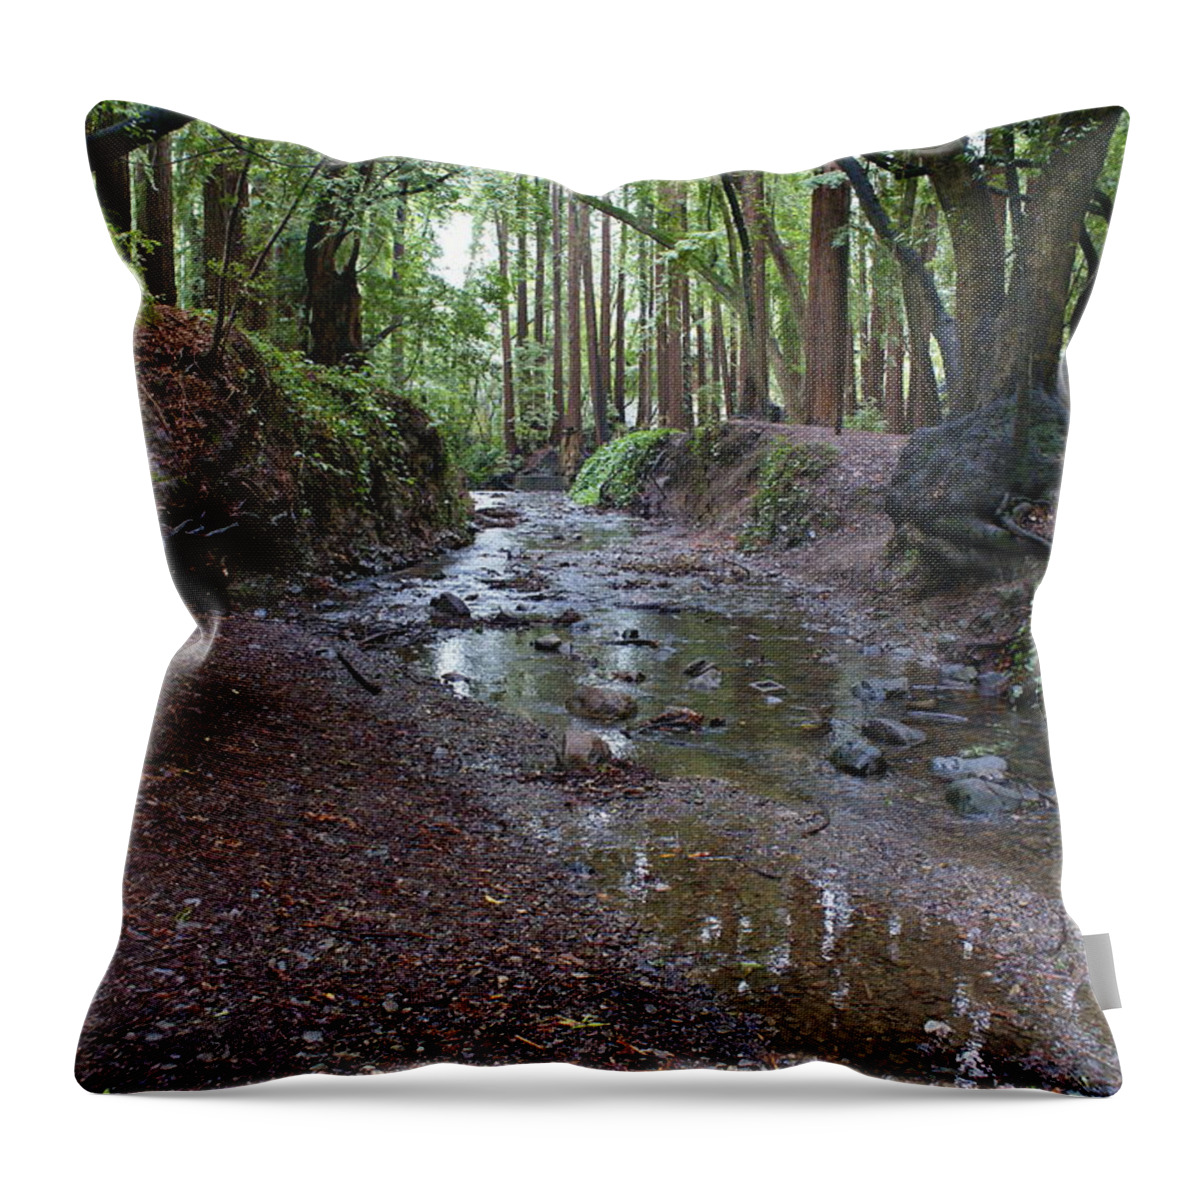 Mount Tamalpais Throw Pillow featuring the photograph Miller Grove by Ben Upham III